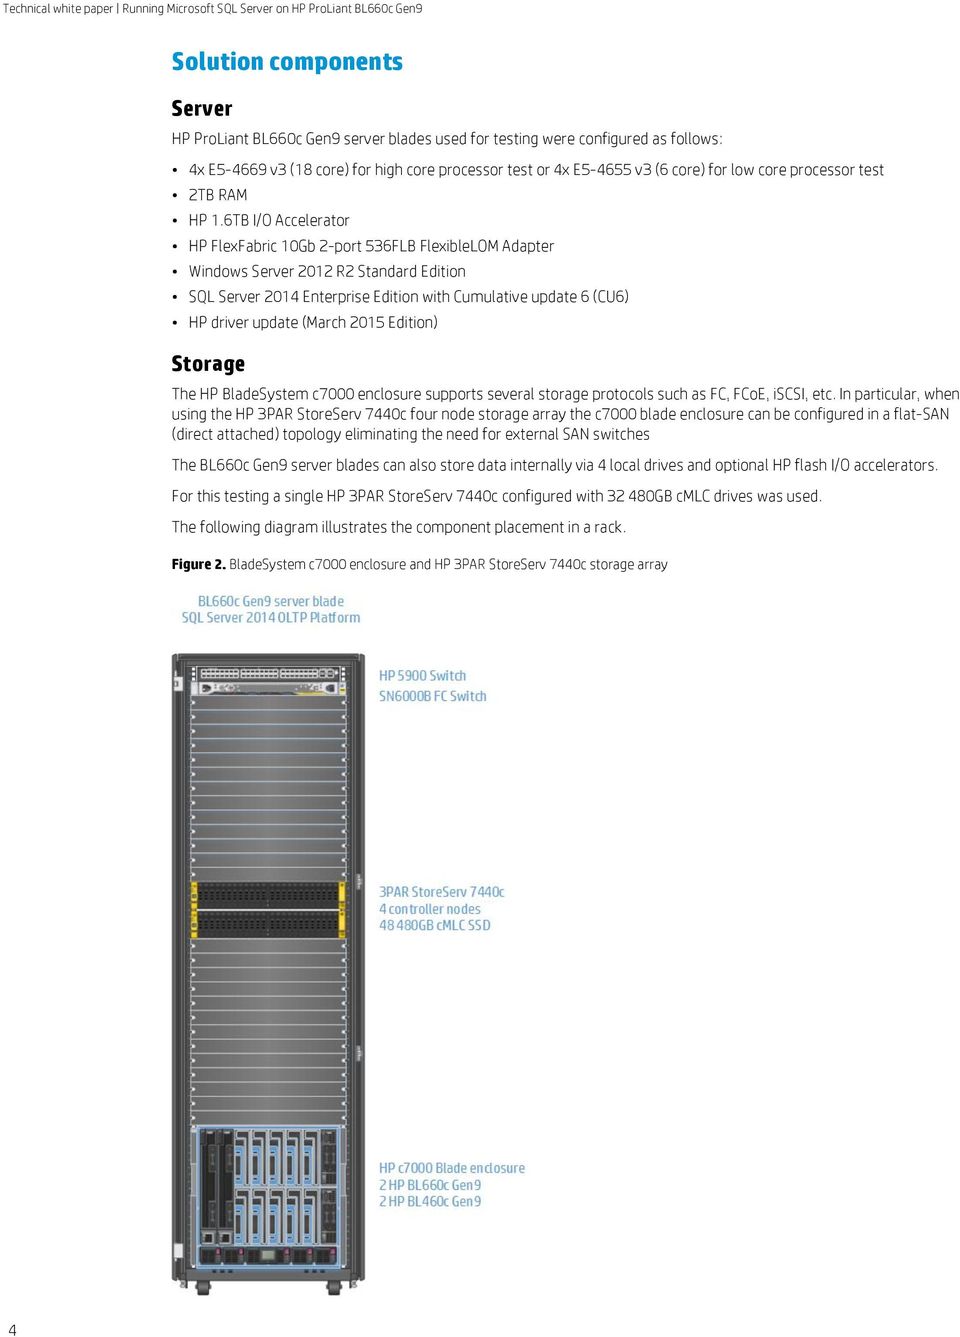 6TB I/O Accelerator HP FlexFabric 10Gb 2-port 536FLB FlexibleLOM Adapter Windows Server 2012 R2 Standard Edition SQL Server 2014 Enterprise Edition with Cumulative update 6 (CU6) HP driver update